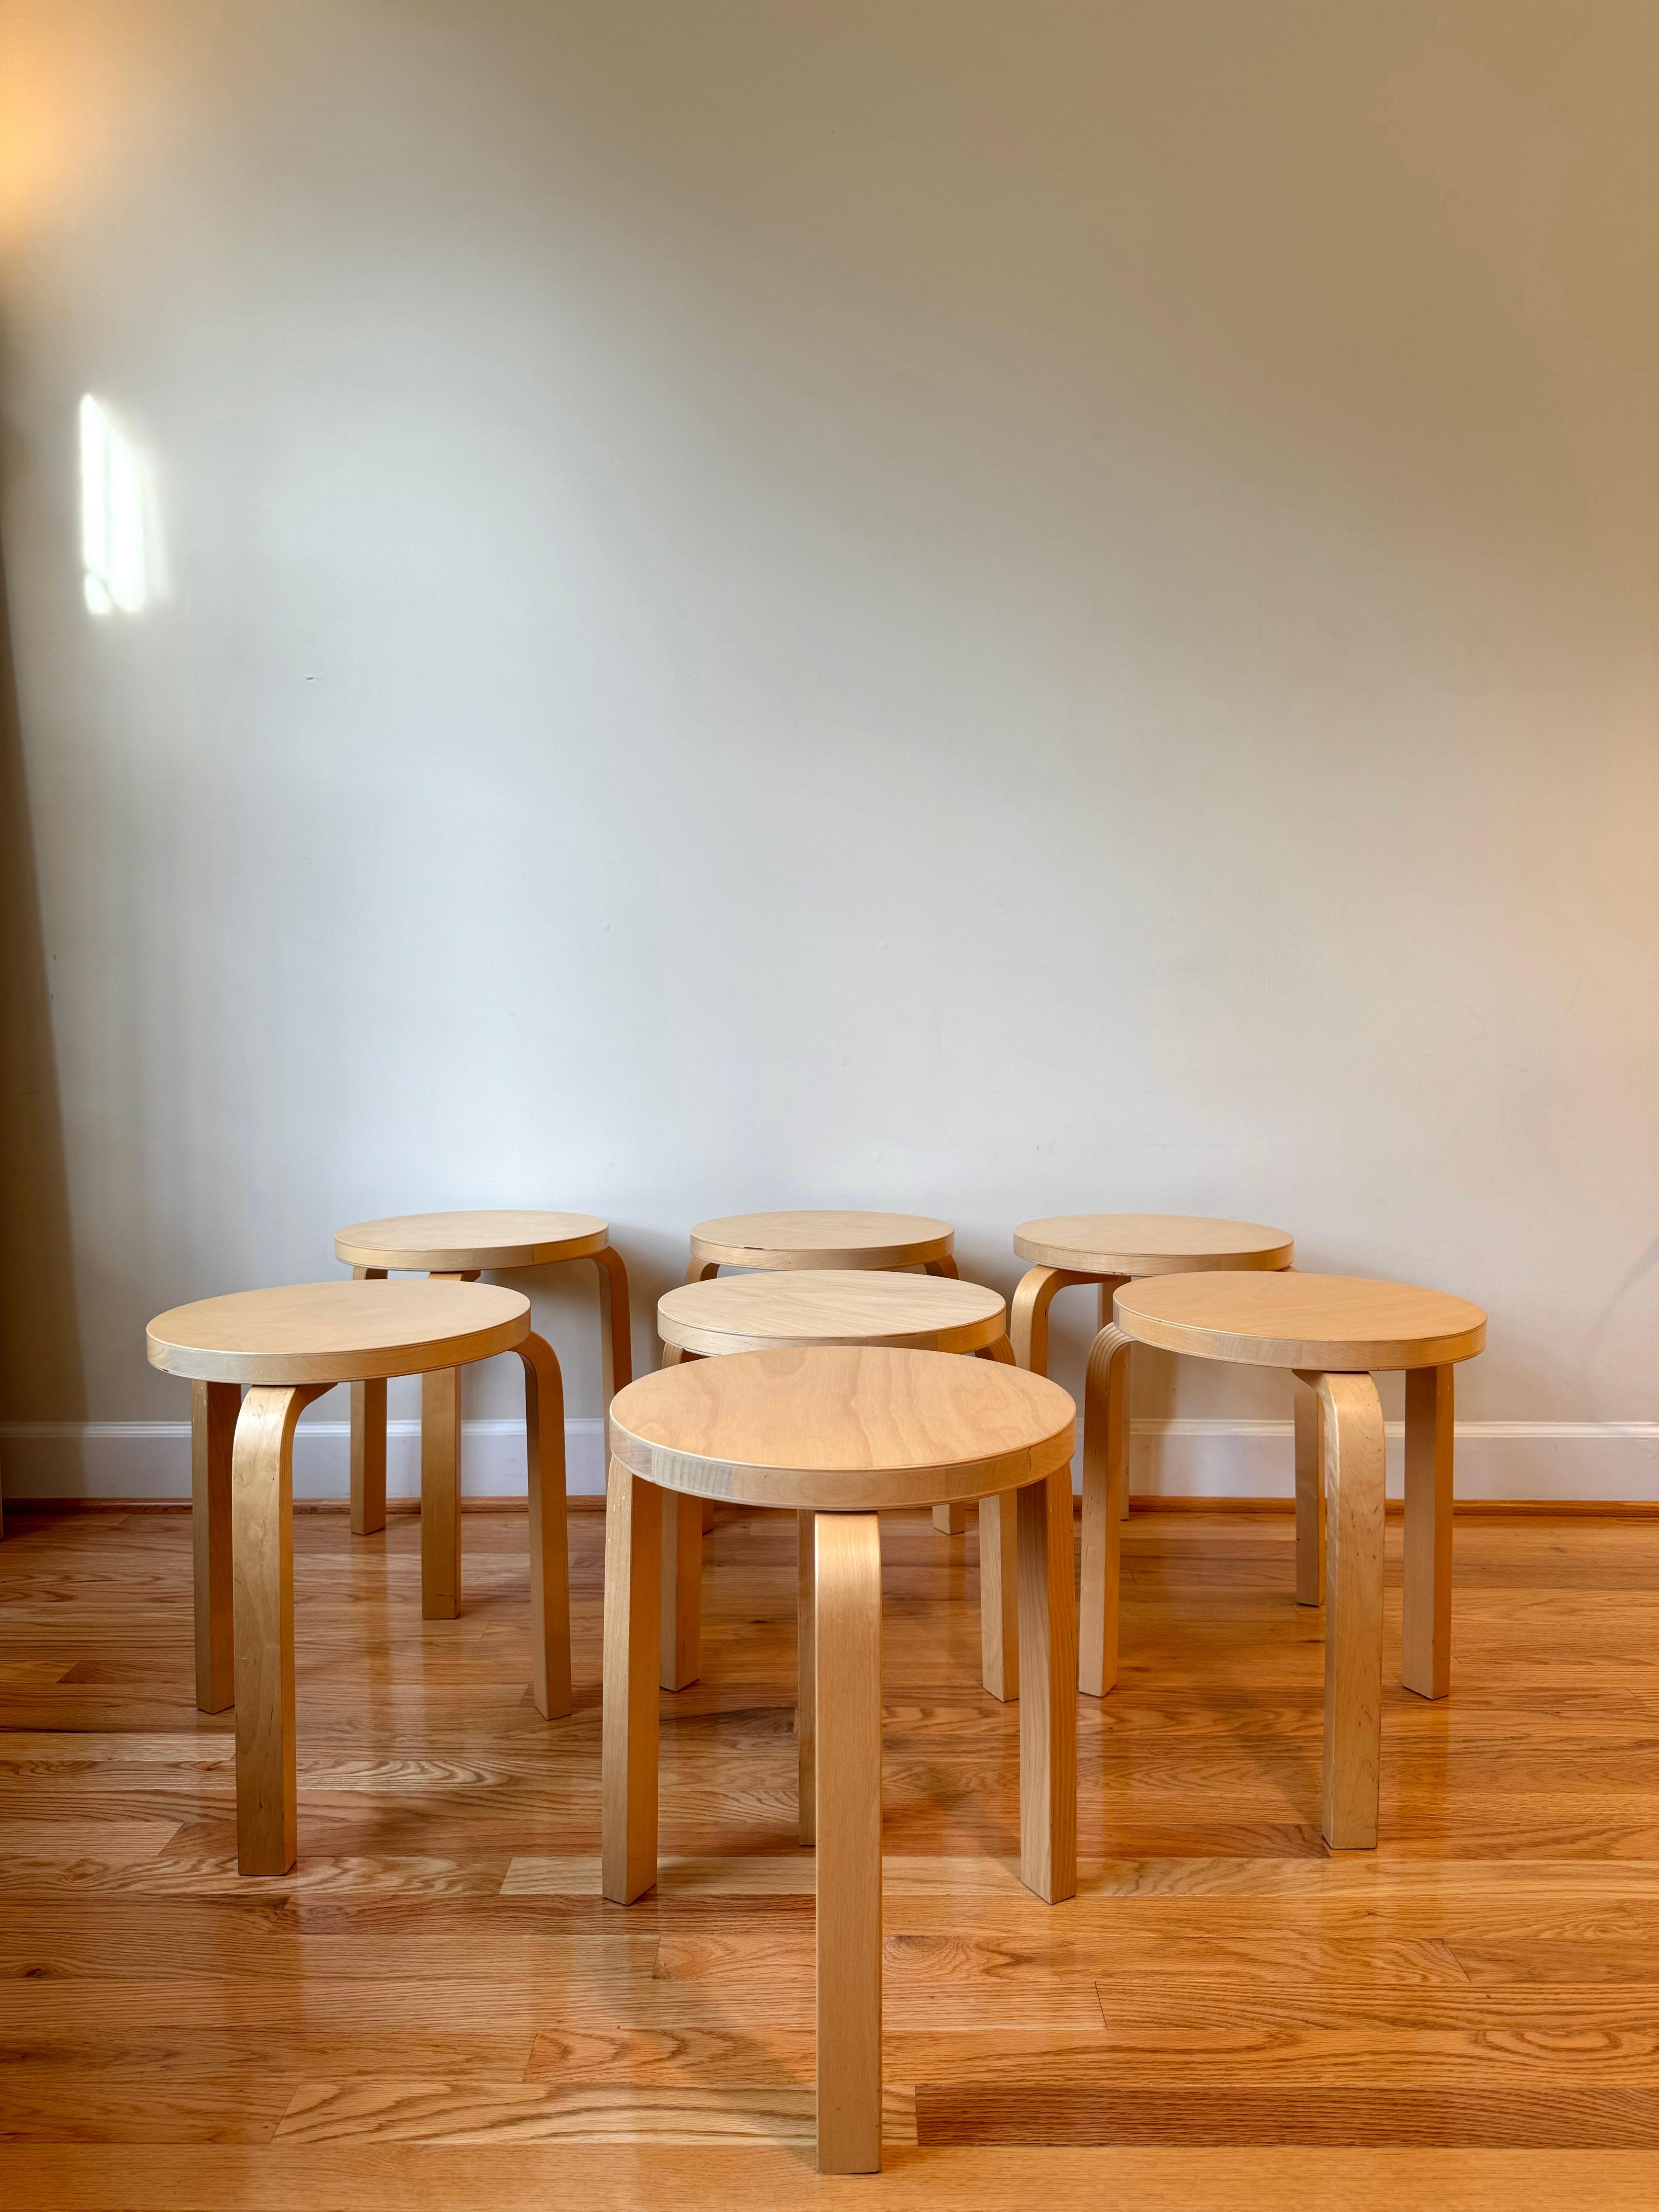 Alvar Aaltos ikonischer Hocker 60 ist das elementarste aller Möbelstücke und eignet sich gleichermaßen als Sitzgelegenheit, Tisch, Ablage oder Ausstellungsfläche. Das aus den Idealen der Moderne und der finnischen Innovation hervorgegangene